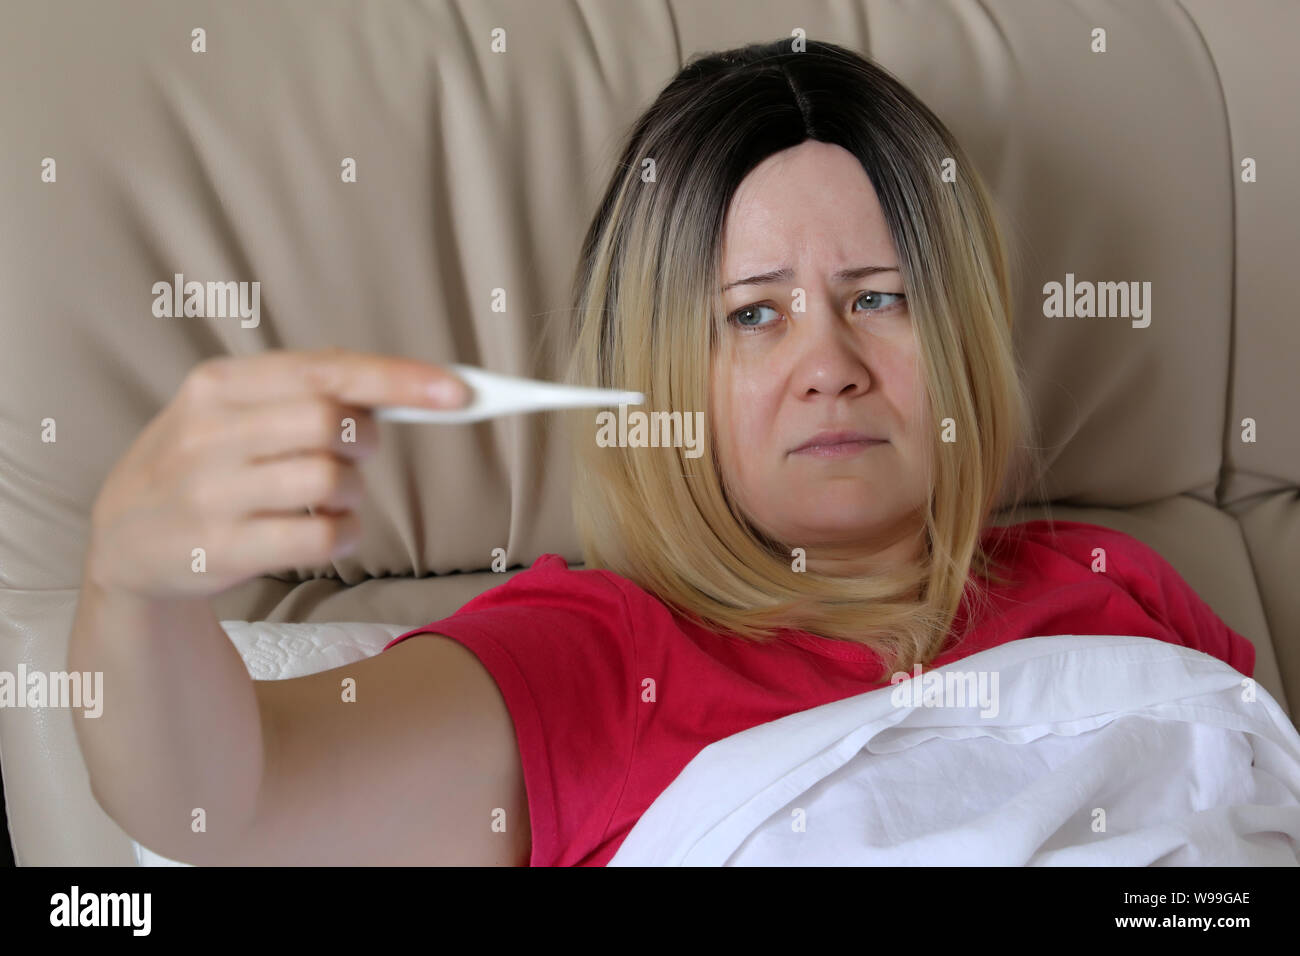 Kranke Frau die Messung der Körpertemperatur in einem Bett liegen, digitale Thermometer in weiblicher Hand. Konzept von Fieber, Erkältung und Grippe, Krankheit, Kopf Schmerzen Stockfoto